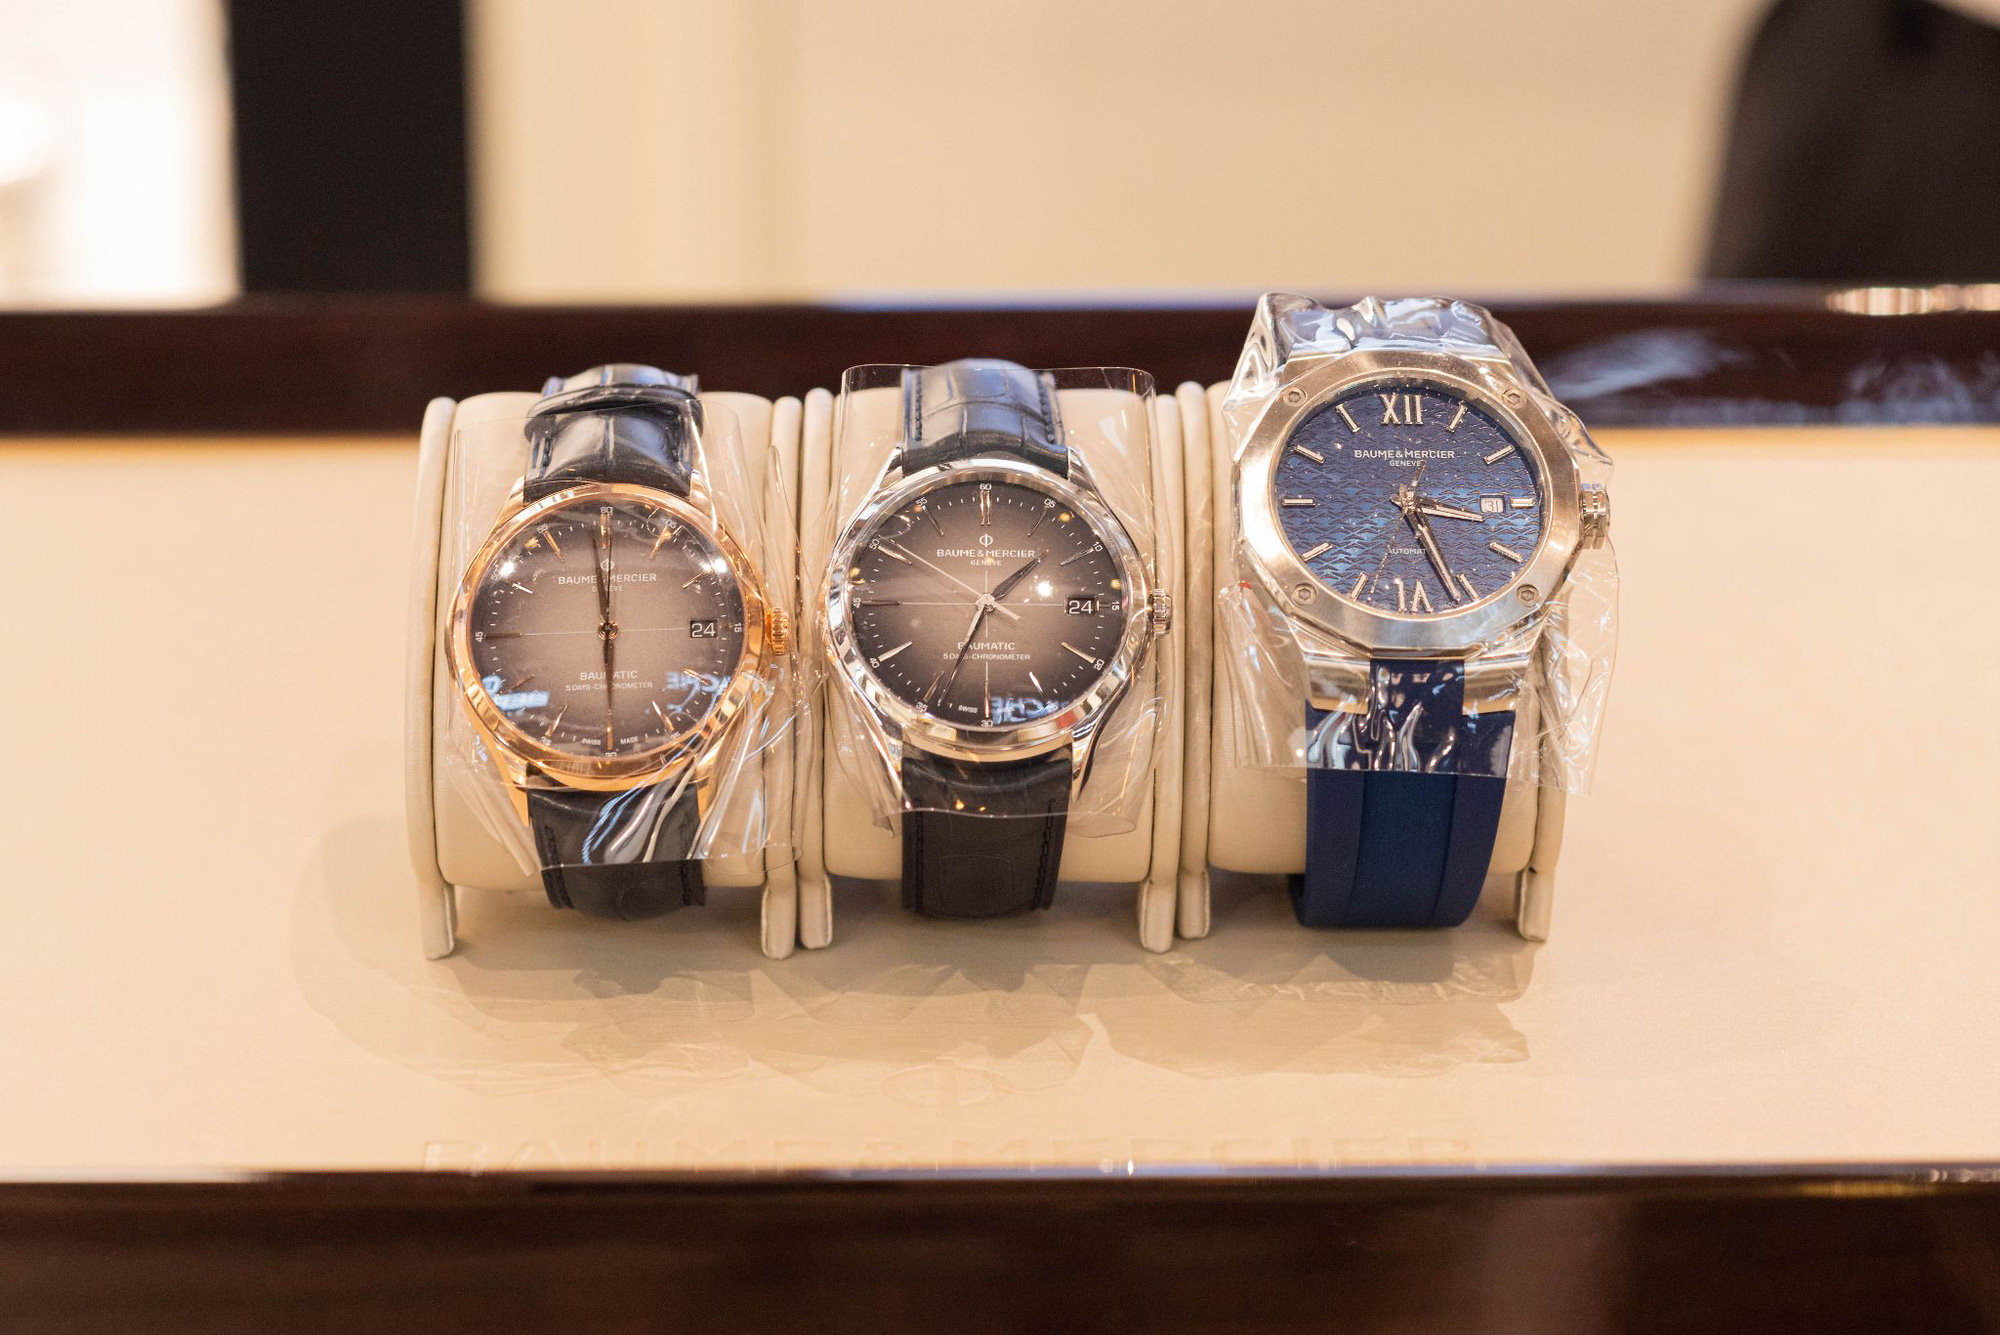 Future Time khai trương cửa hàng tại Hà Nội với nhiều mẫu đồng hồ sang trọng, mới lạ - Ảnh 4.